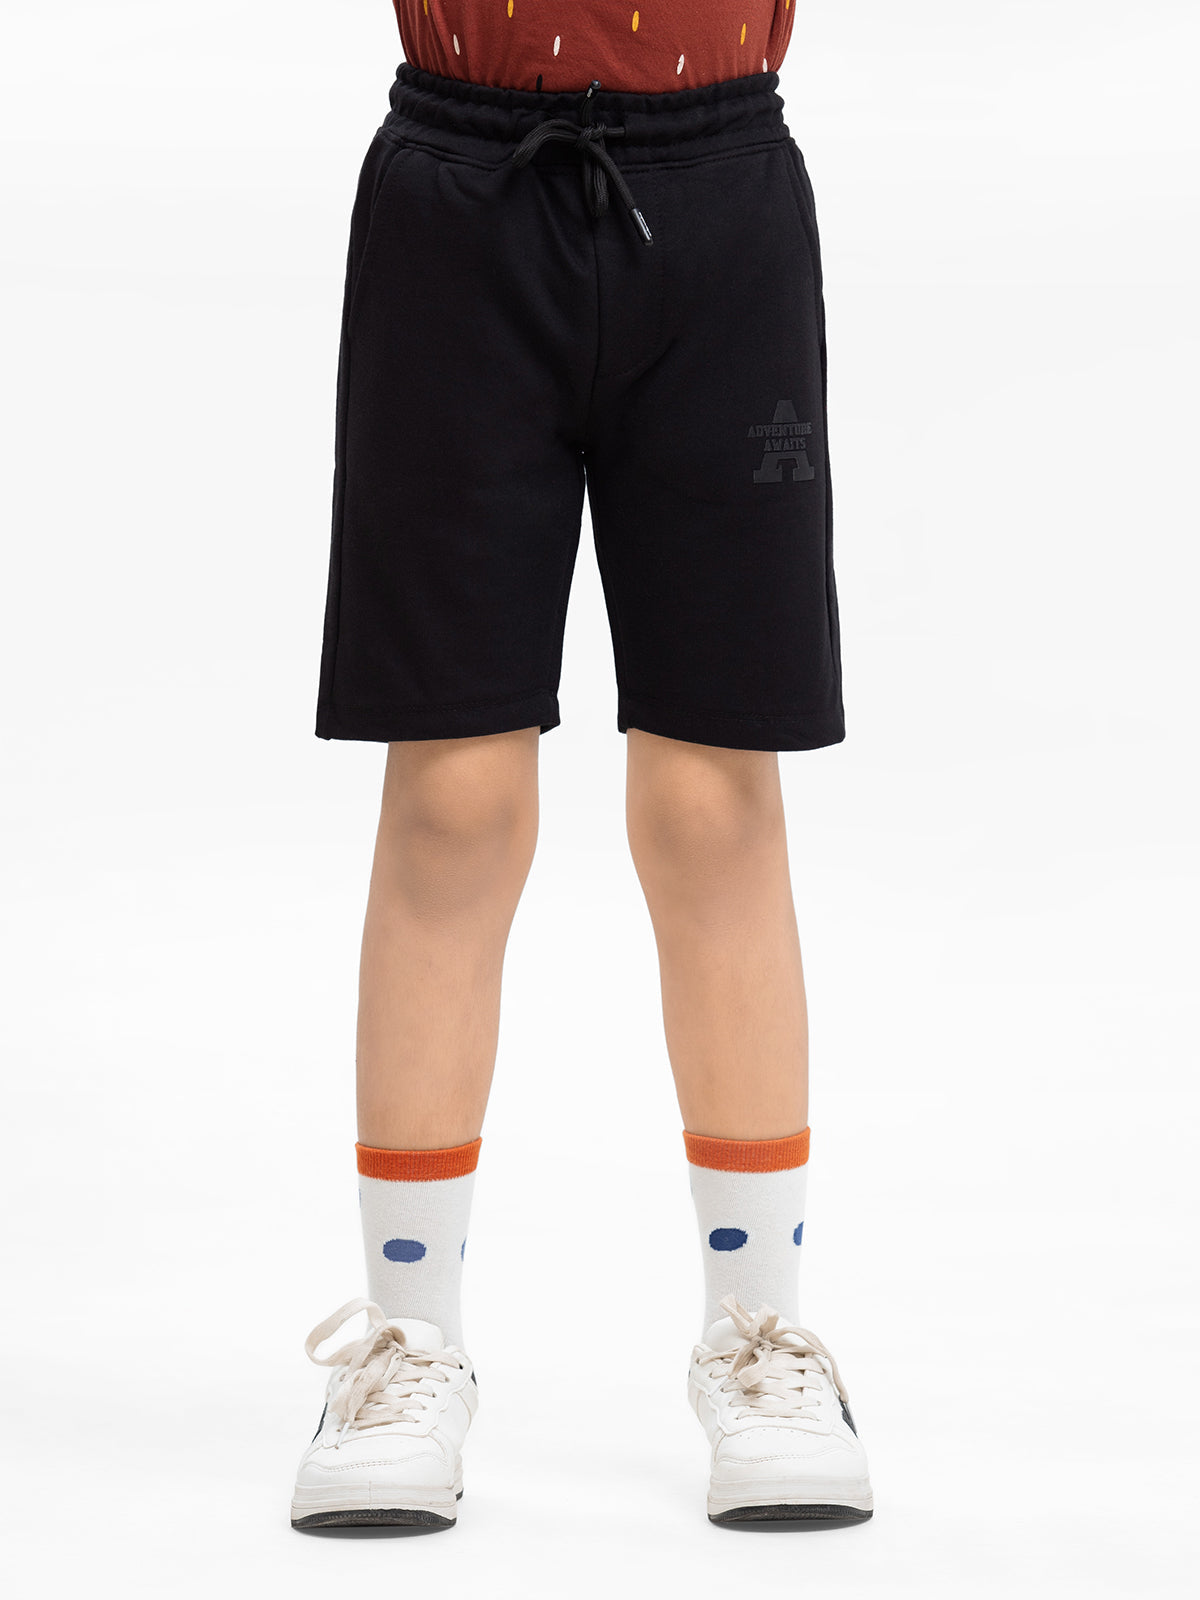 Boy's Black Shorts - EBBSK24-008